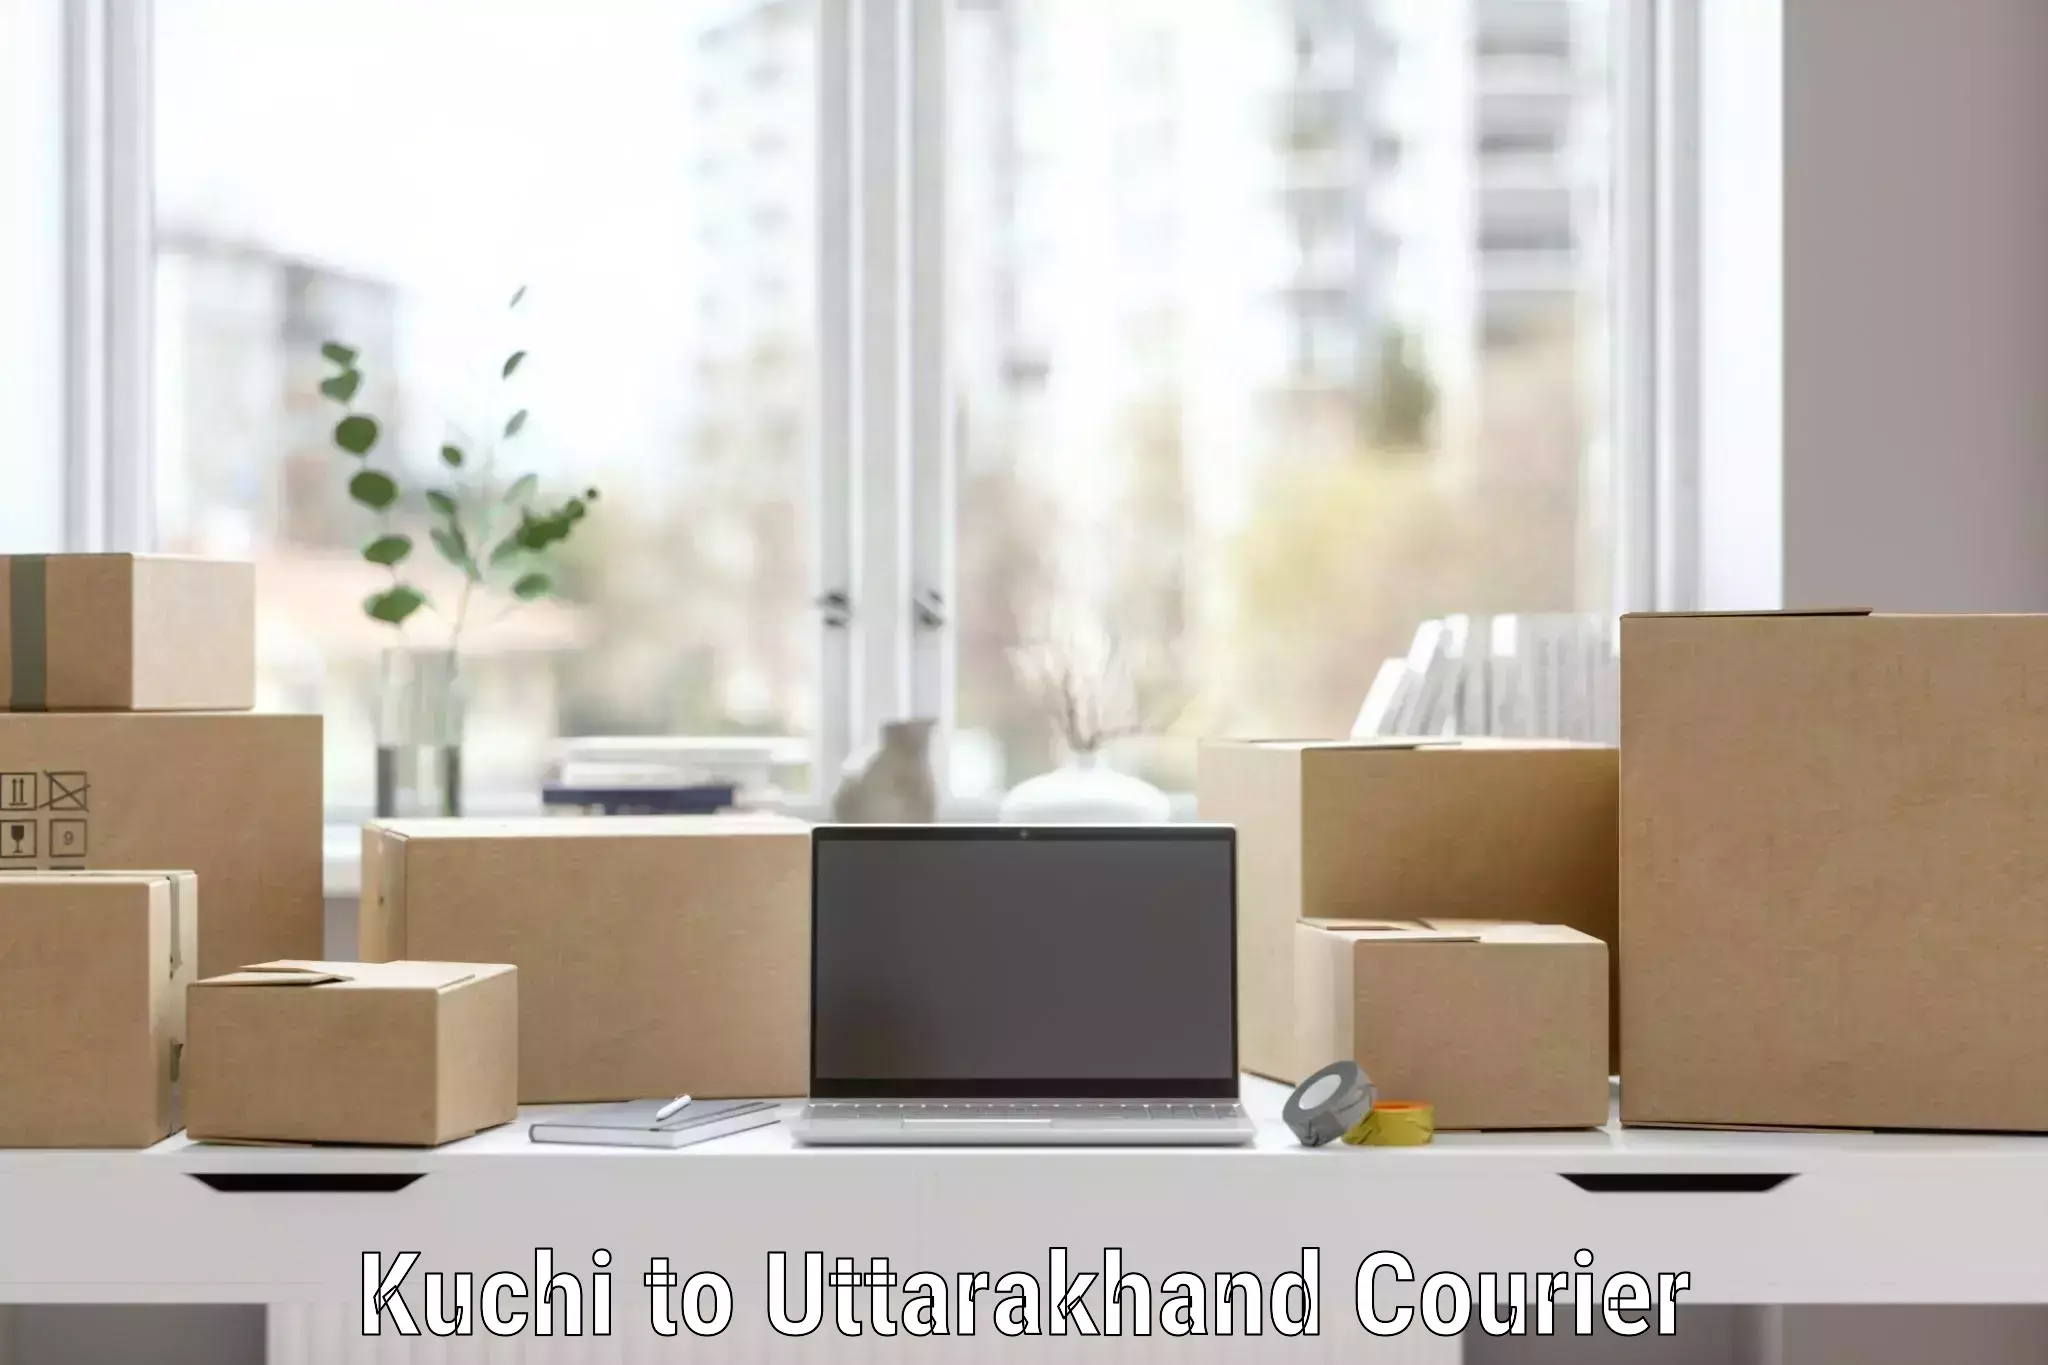 Home moving experts Kuchi to Uttarakhand